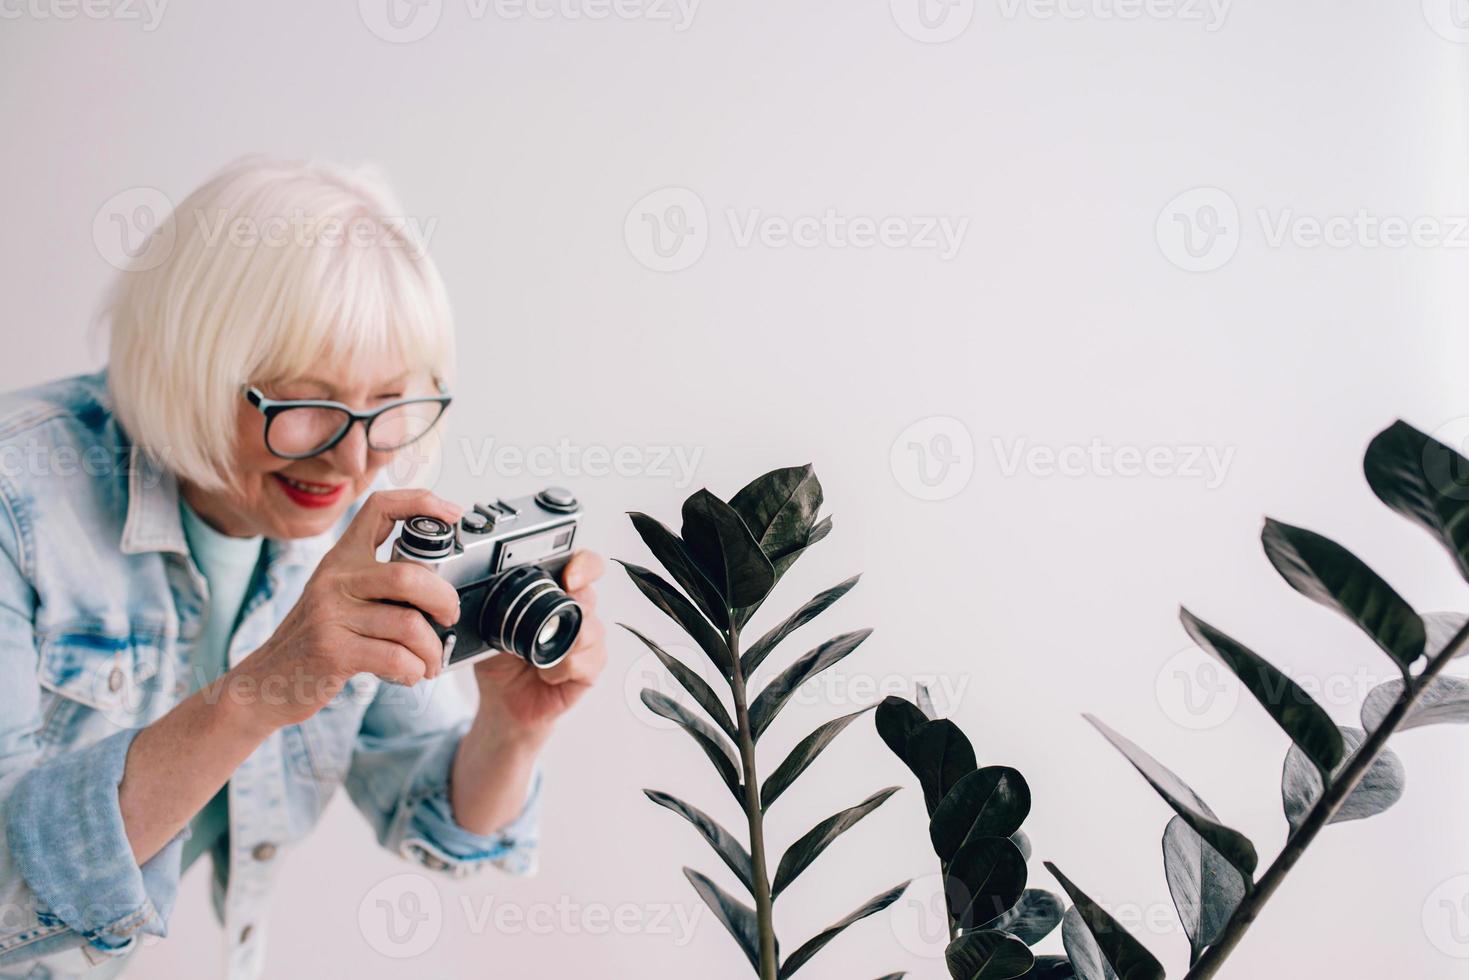 Senior stilvolle Frau mit grauem Haar und in Brille und Jeansjacke, die Blumen mit Filmkamera fotografiert. Alter, Hobby, Anti-Age, positive Stimmung, Fotografiekonzept foto